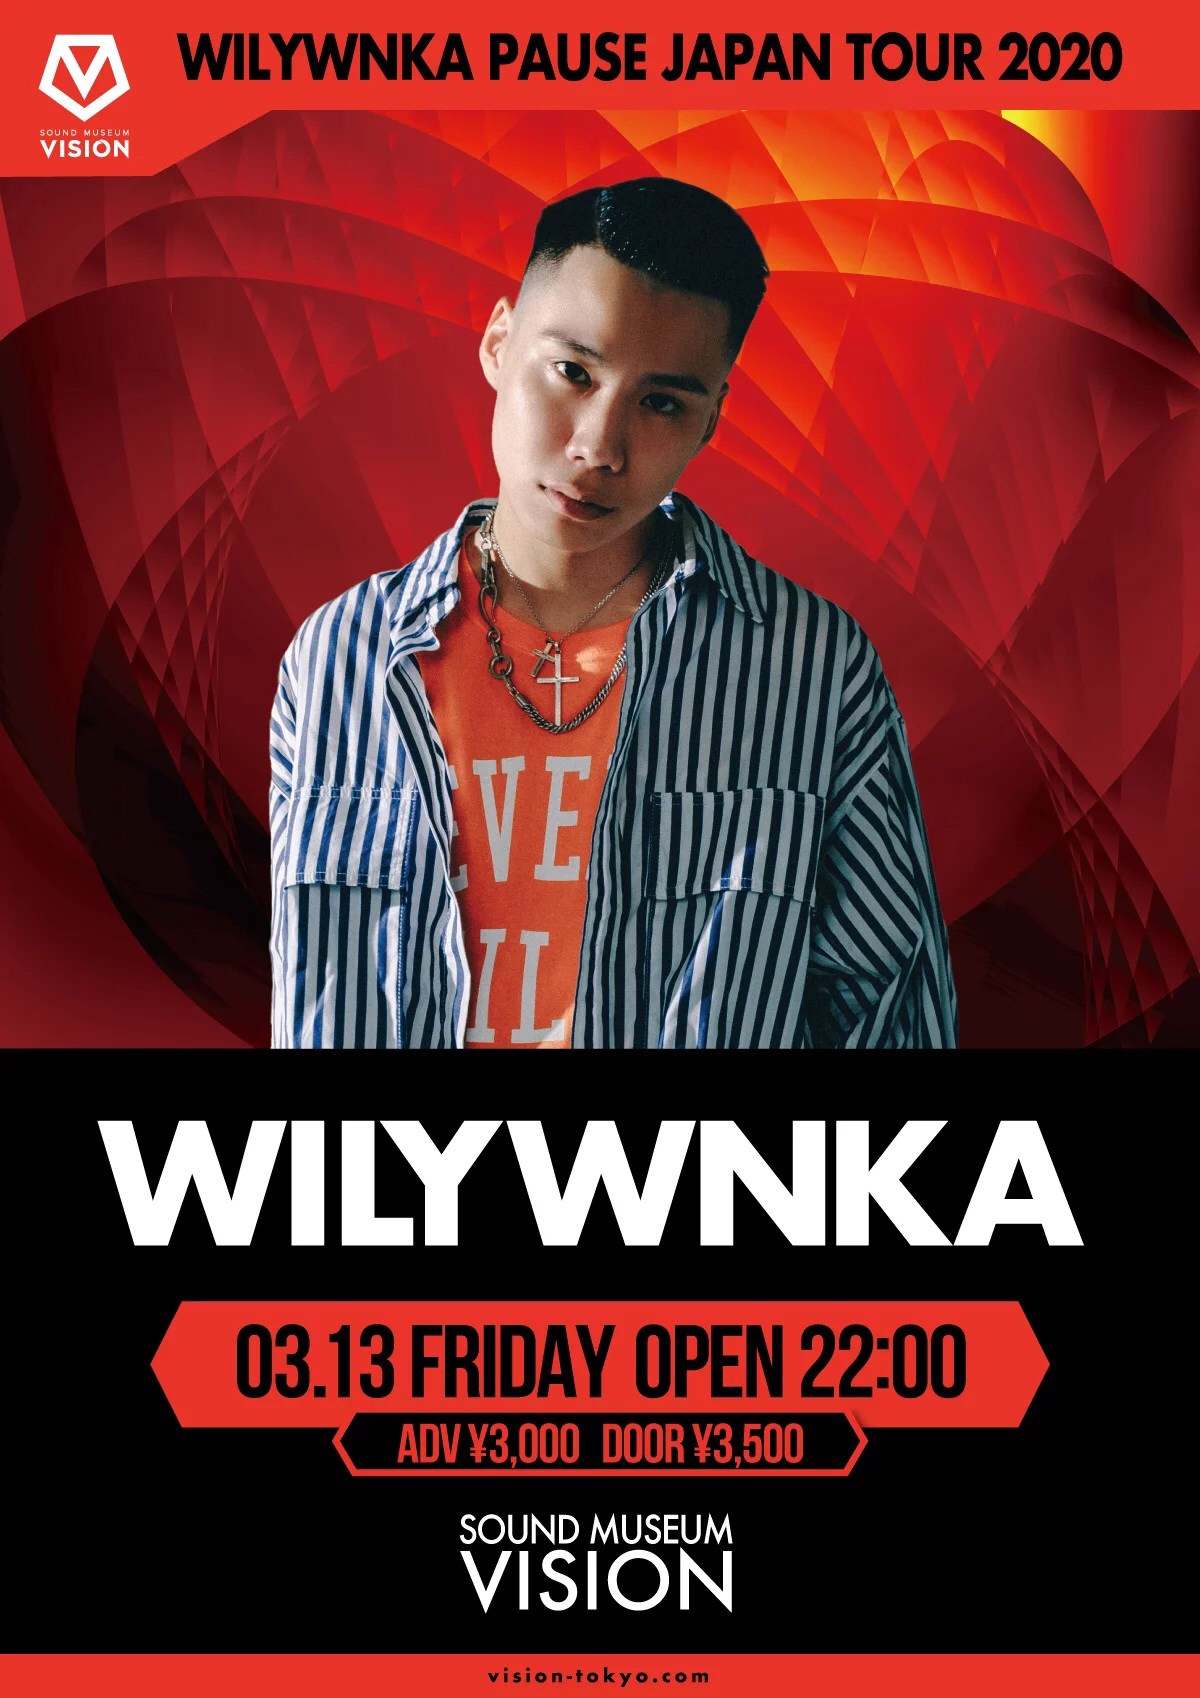 WILYWNKA PAUSE JAPAN TOUR 2020